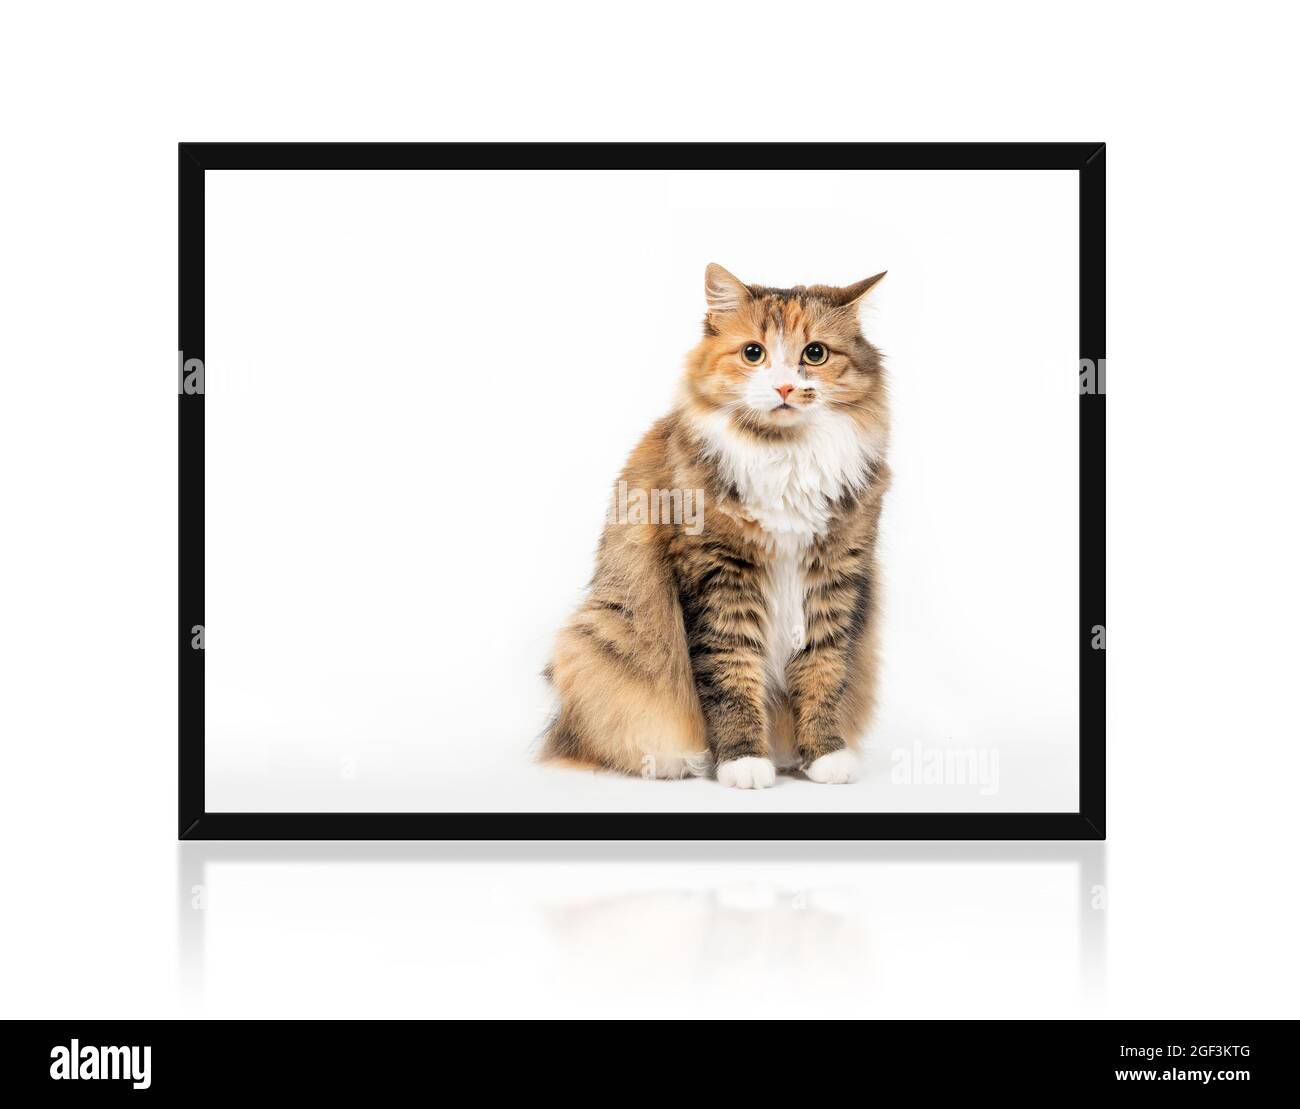 Chat assis droit à l'intérieur d'un cadre photo avec questionnement ou expression agacée tout en regardant la caméra. Mignon doux orange blanc chatte femme W Banque D'Images